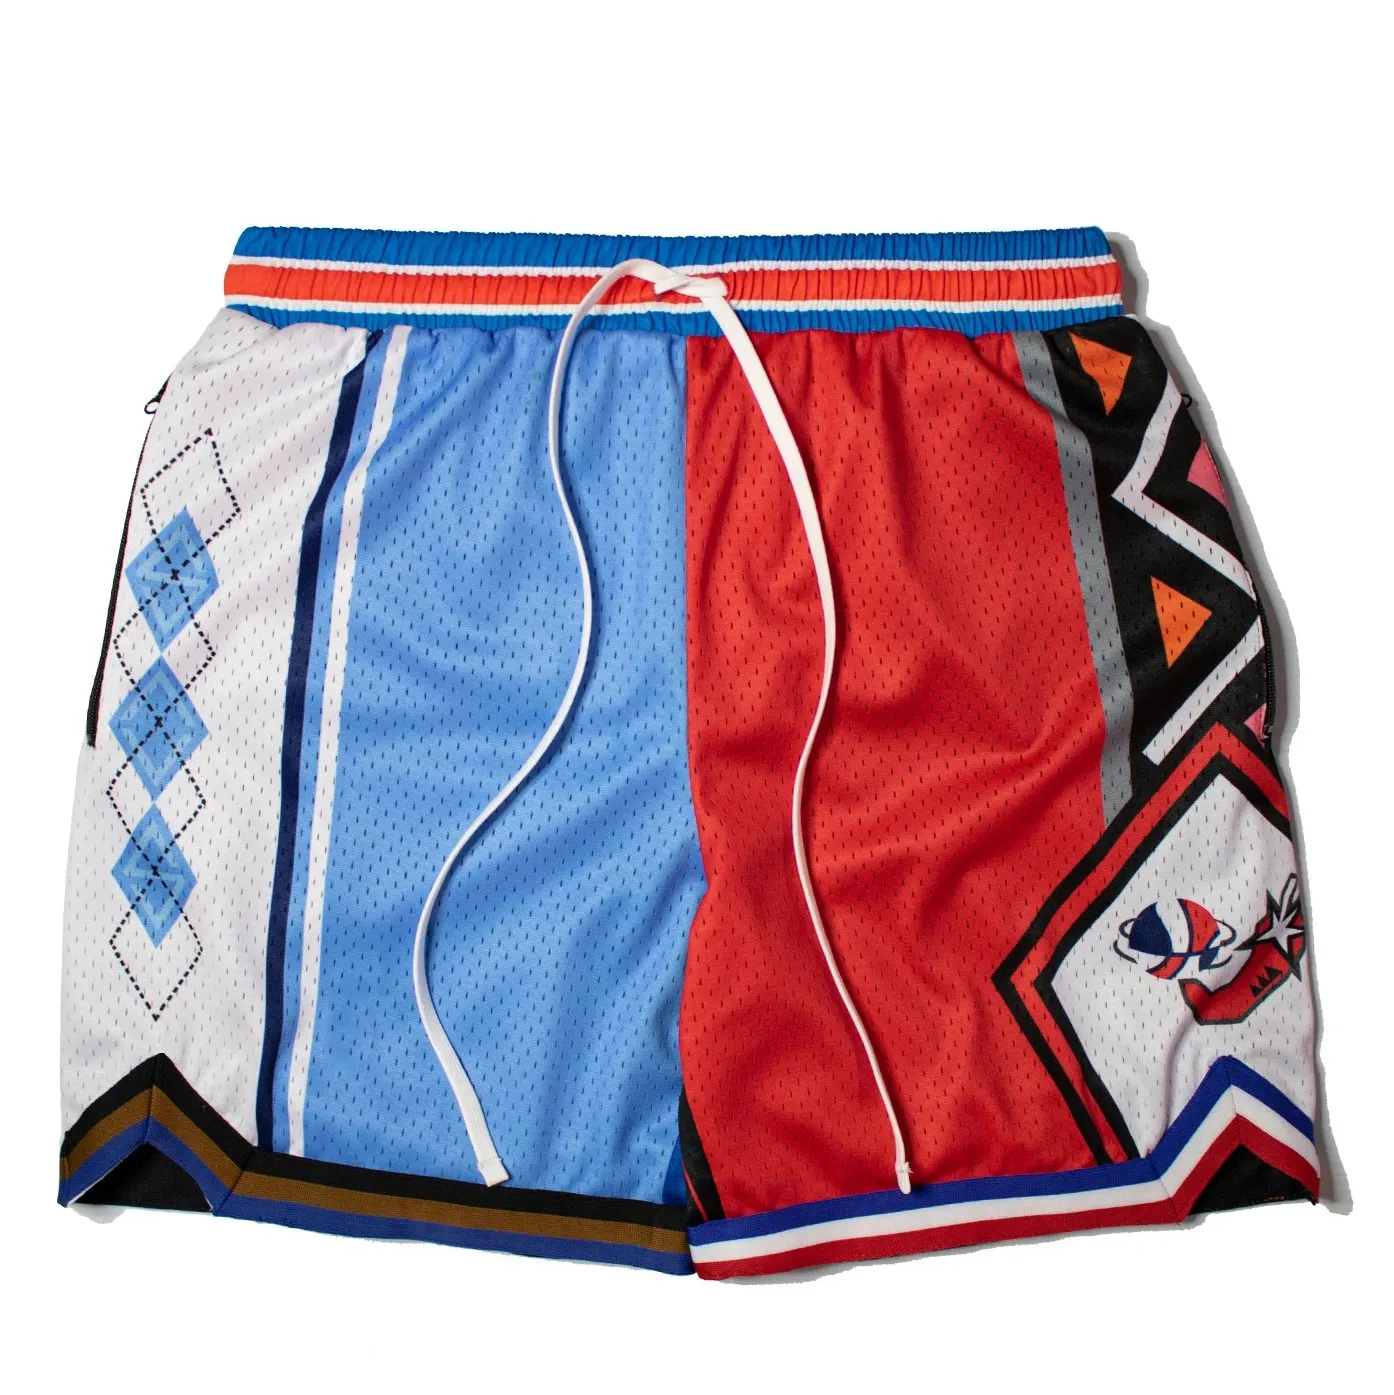 Pantalones cortos deportivos de verano para hombre, Shorts de baloncesto transpirables para entrenamiento, venta al por mayor, productos en oferta